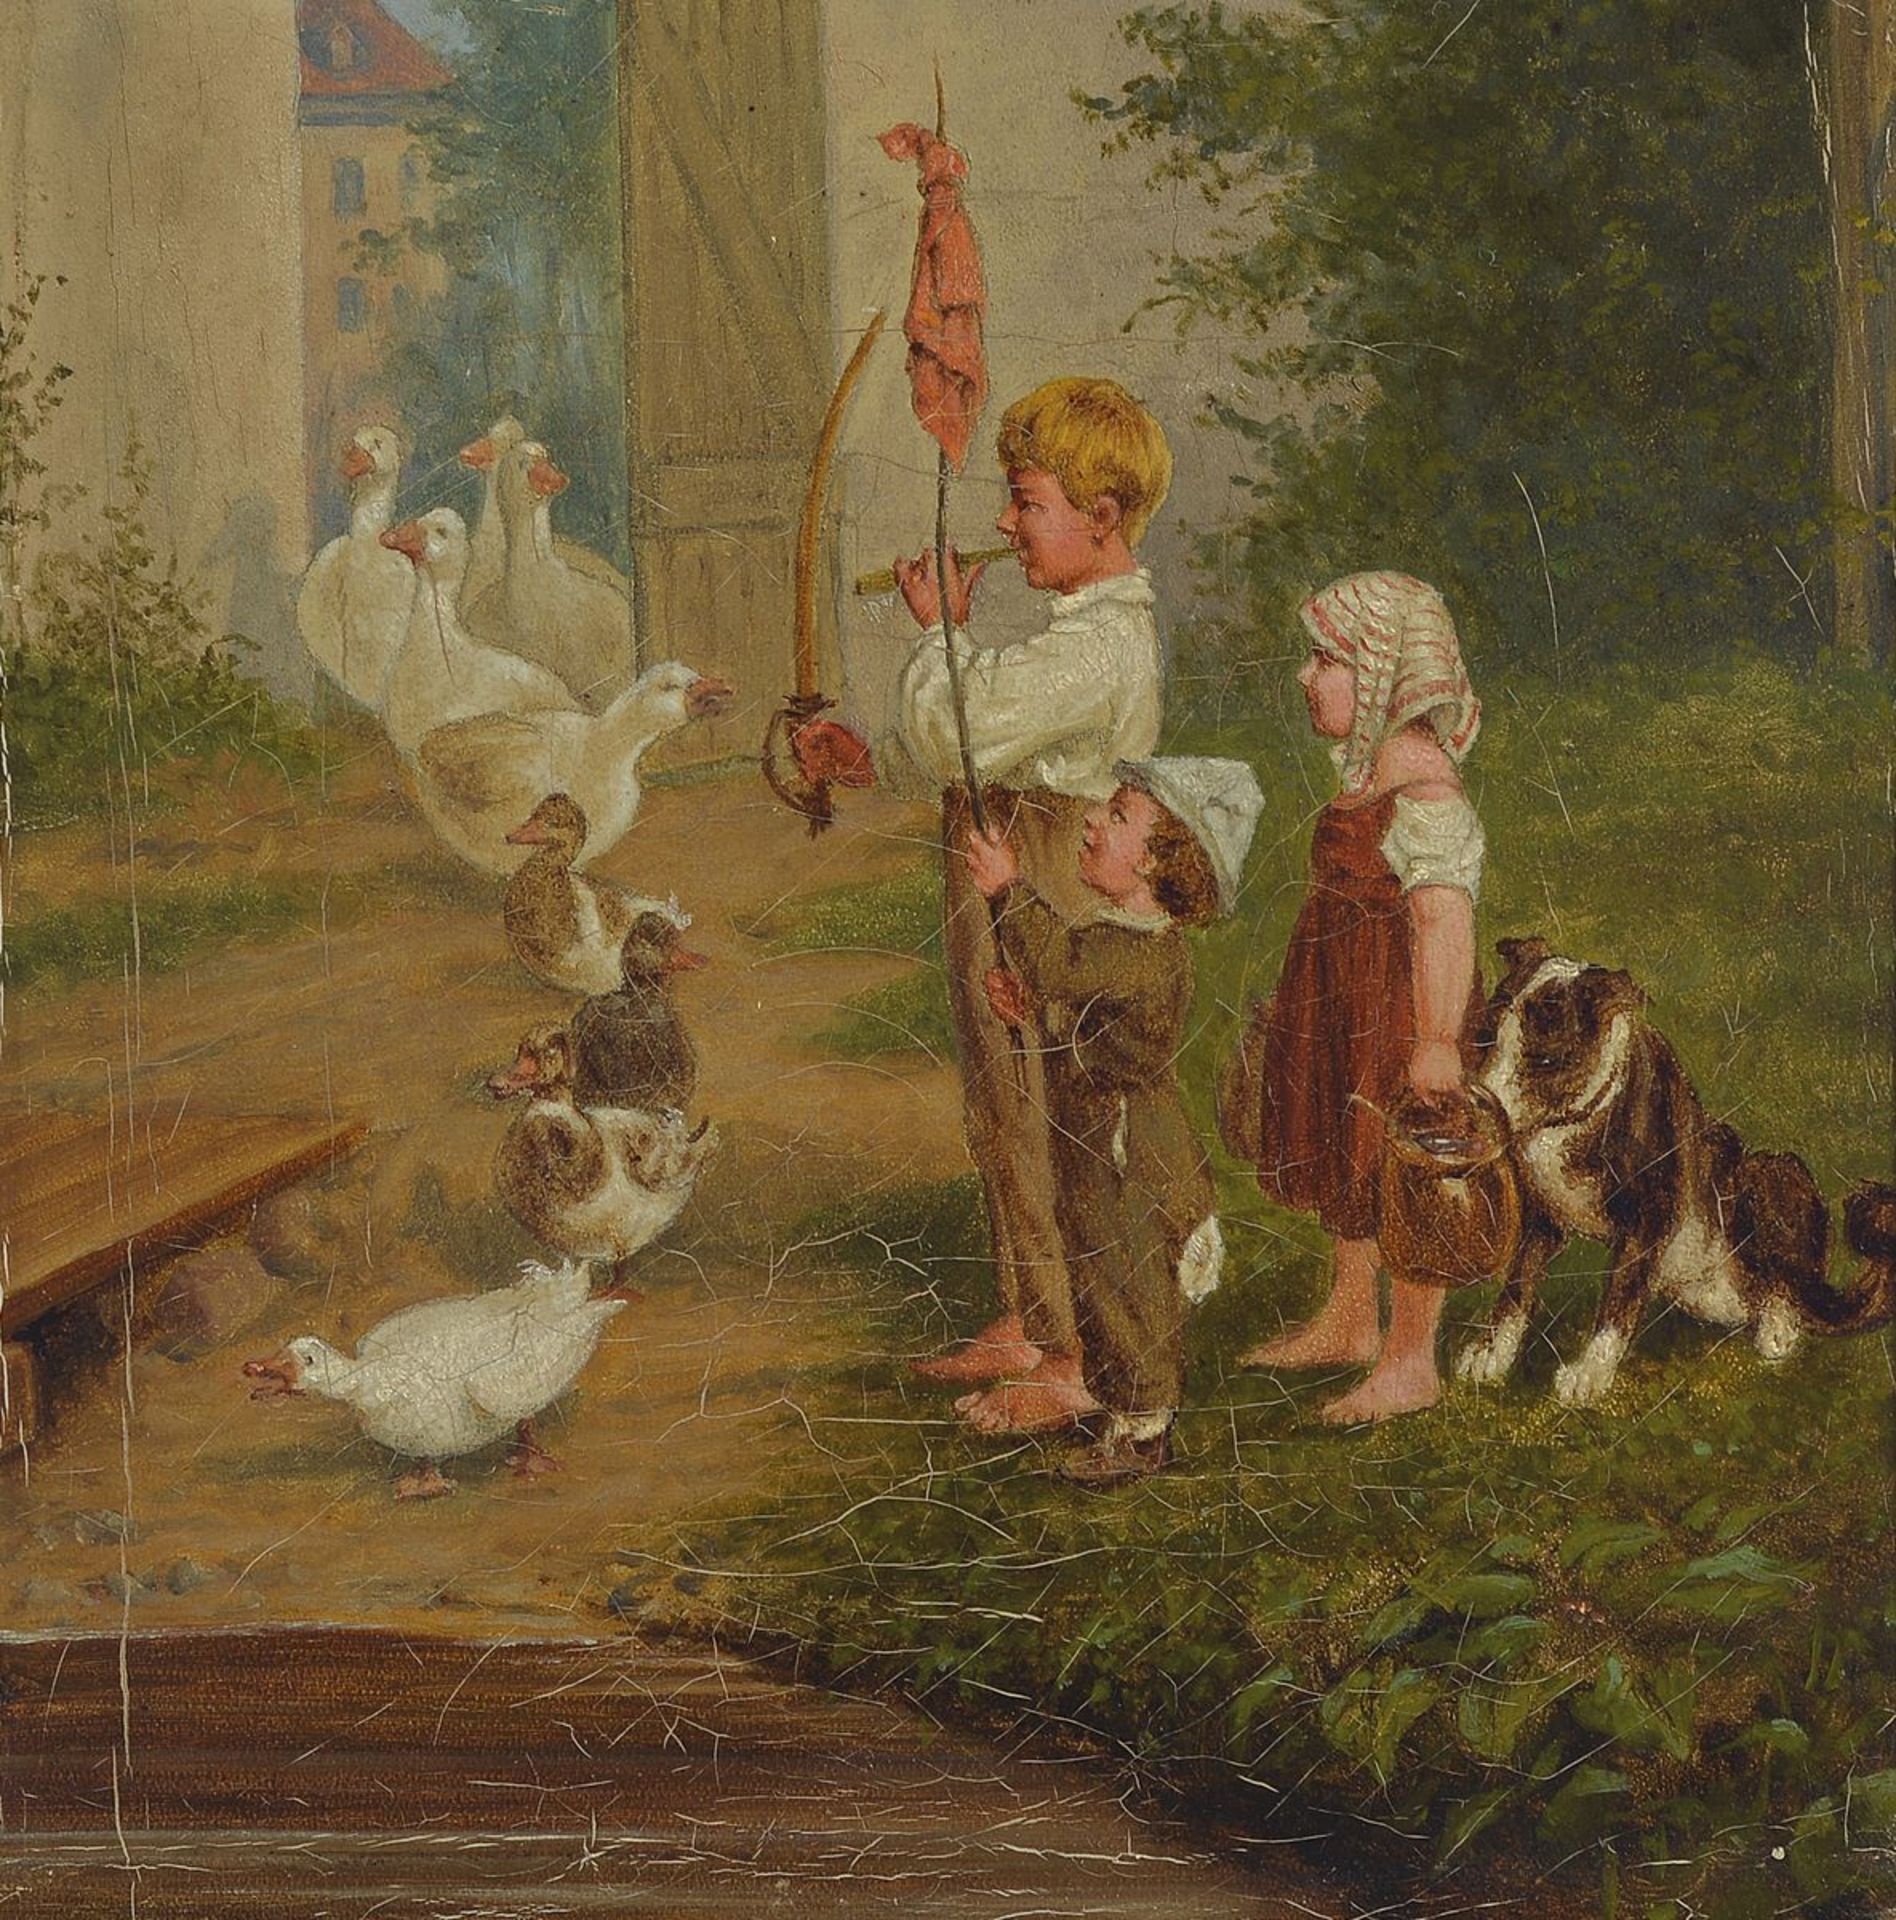 Unbekannter Künstler, deutsch, um 1900, drei Kinder spielen Soldaten und lassen eine Entenschar